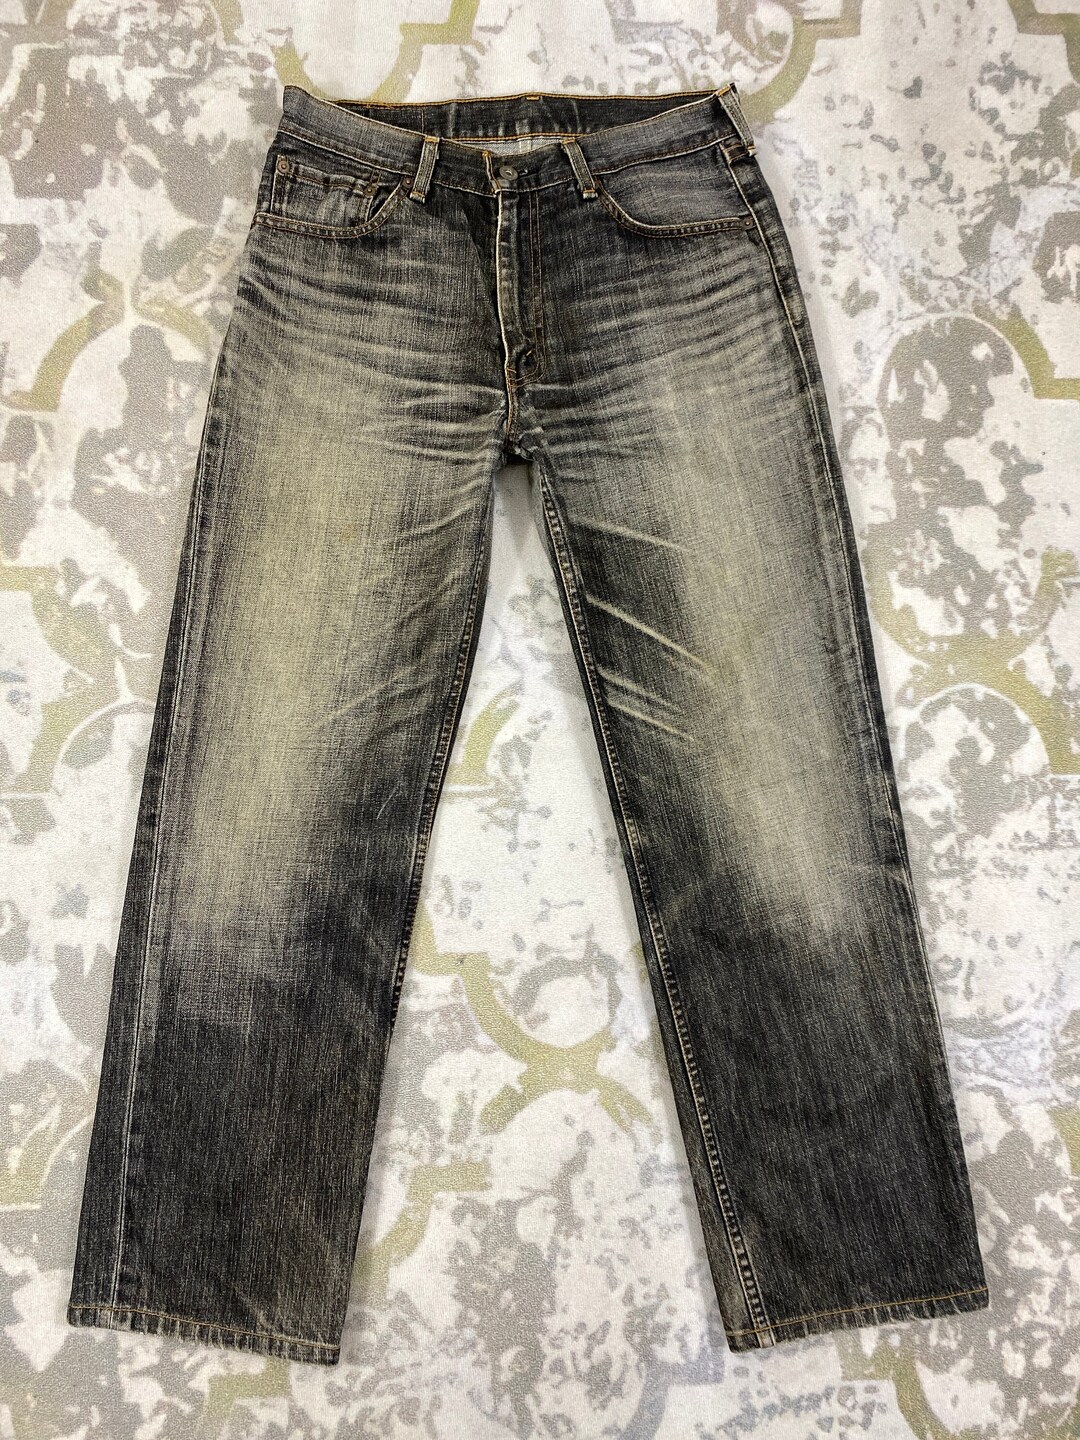 Vintage Levis 502 Jeans 31x29.5 JN 2905 Denim Blue - Etsy